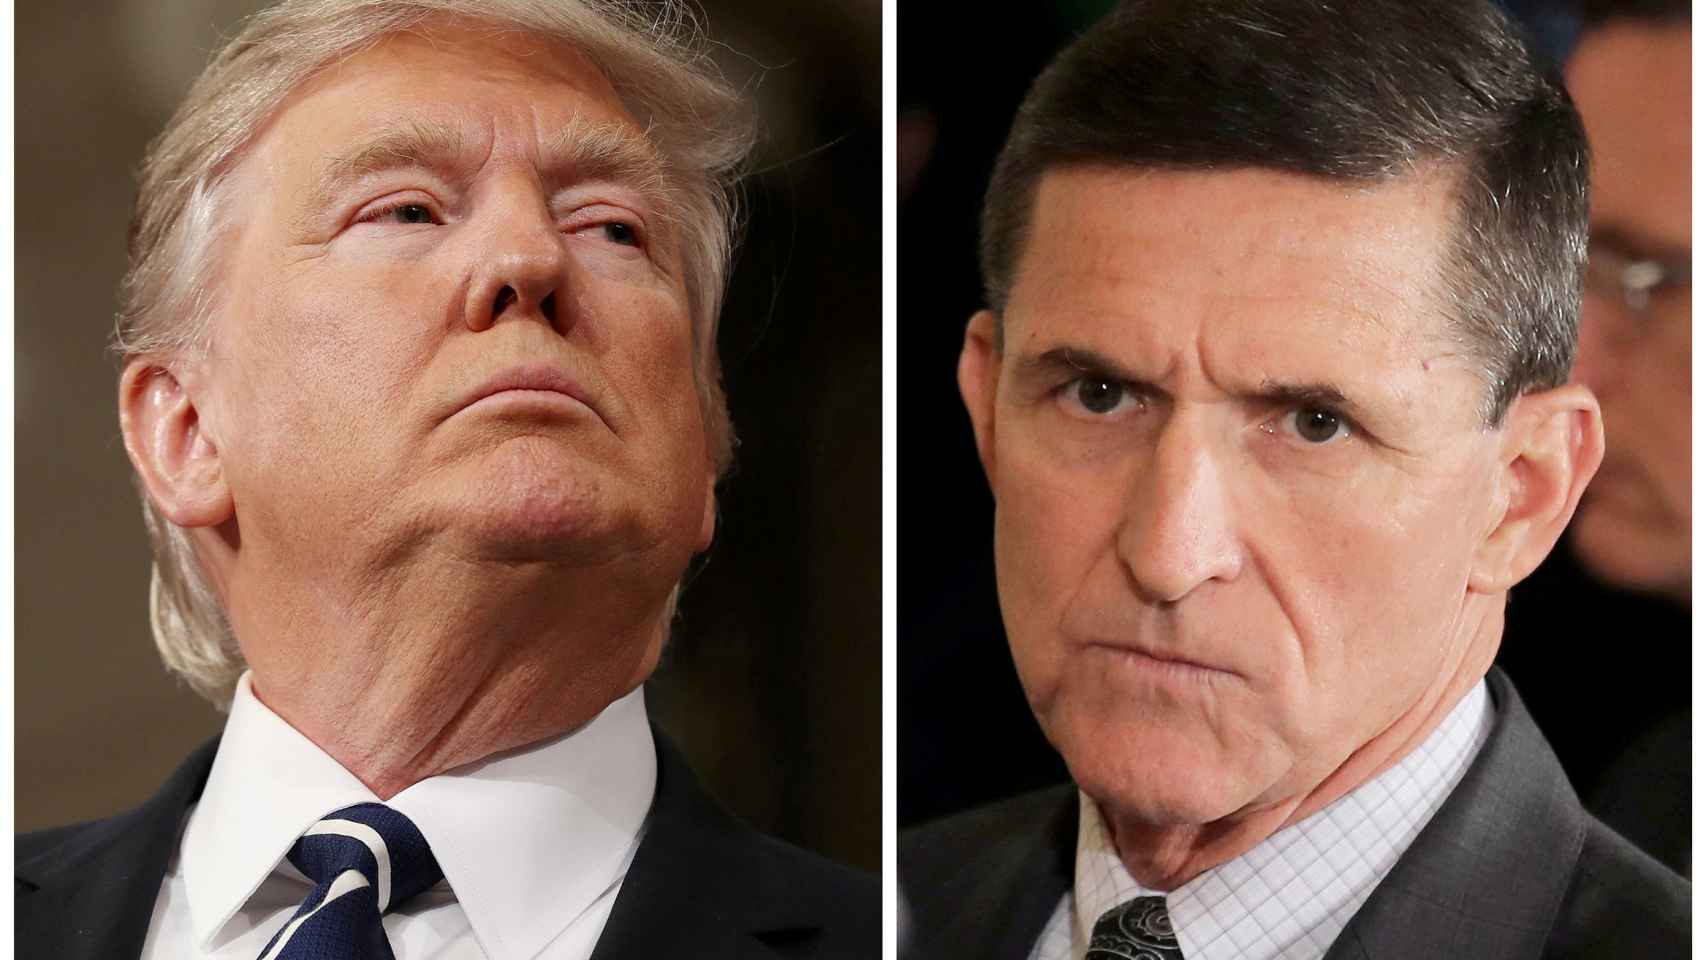 Trump y Flynn